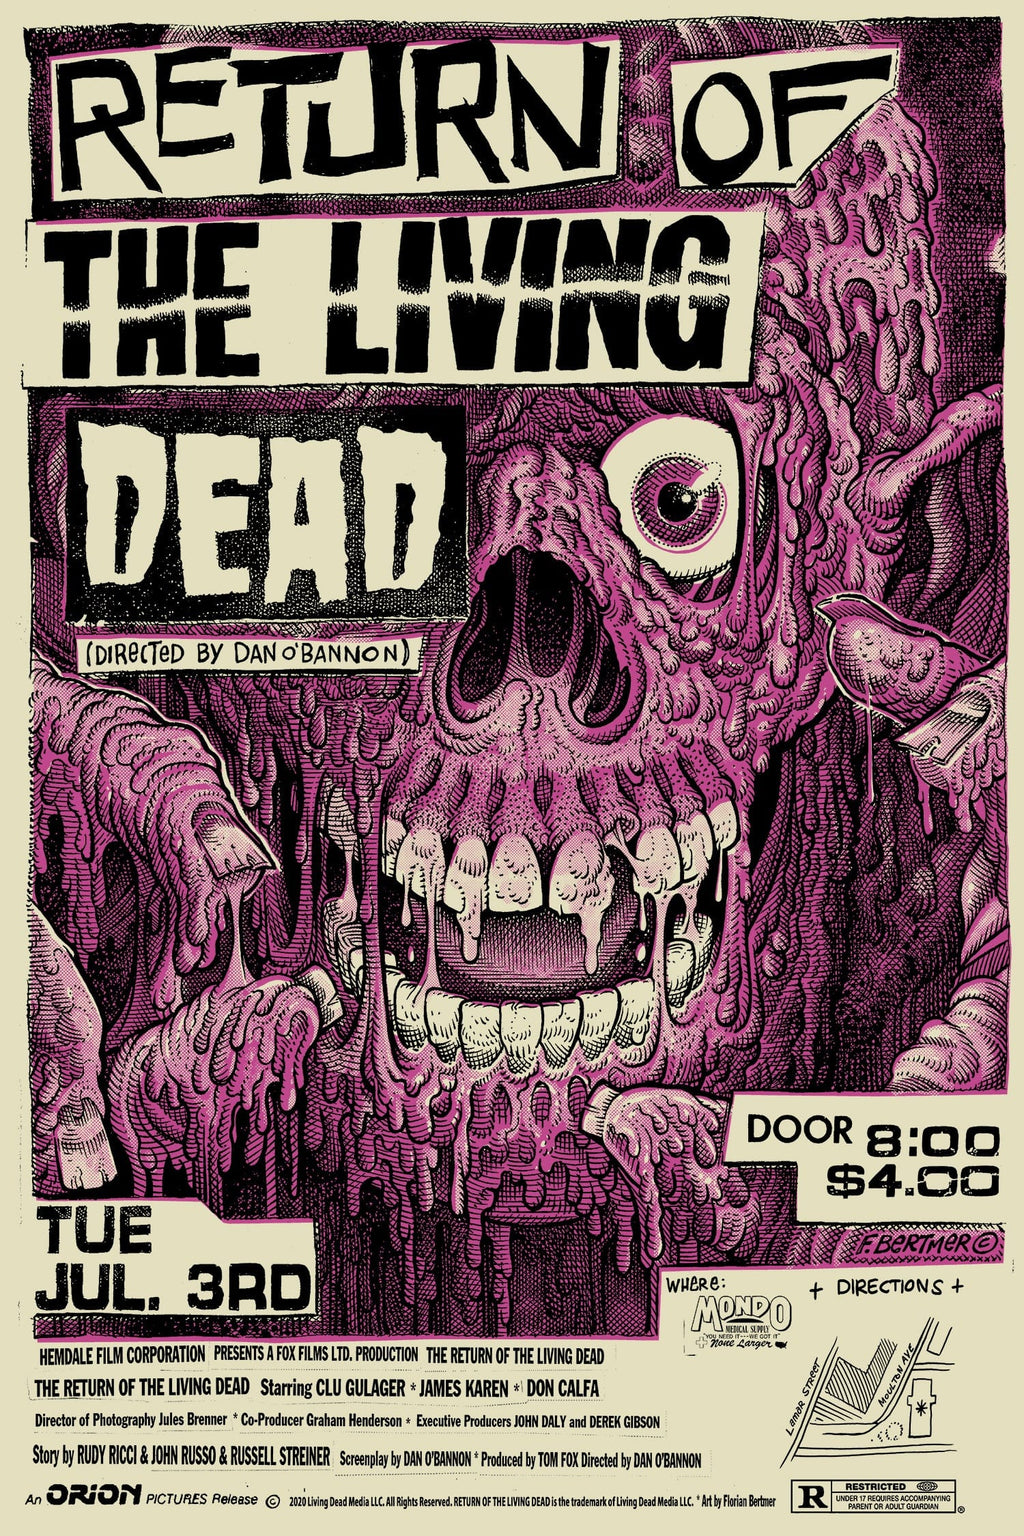 – Return the Poster Mondo Living of Dead